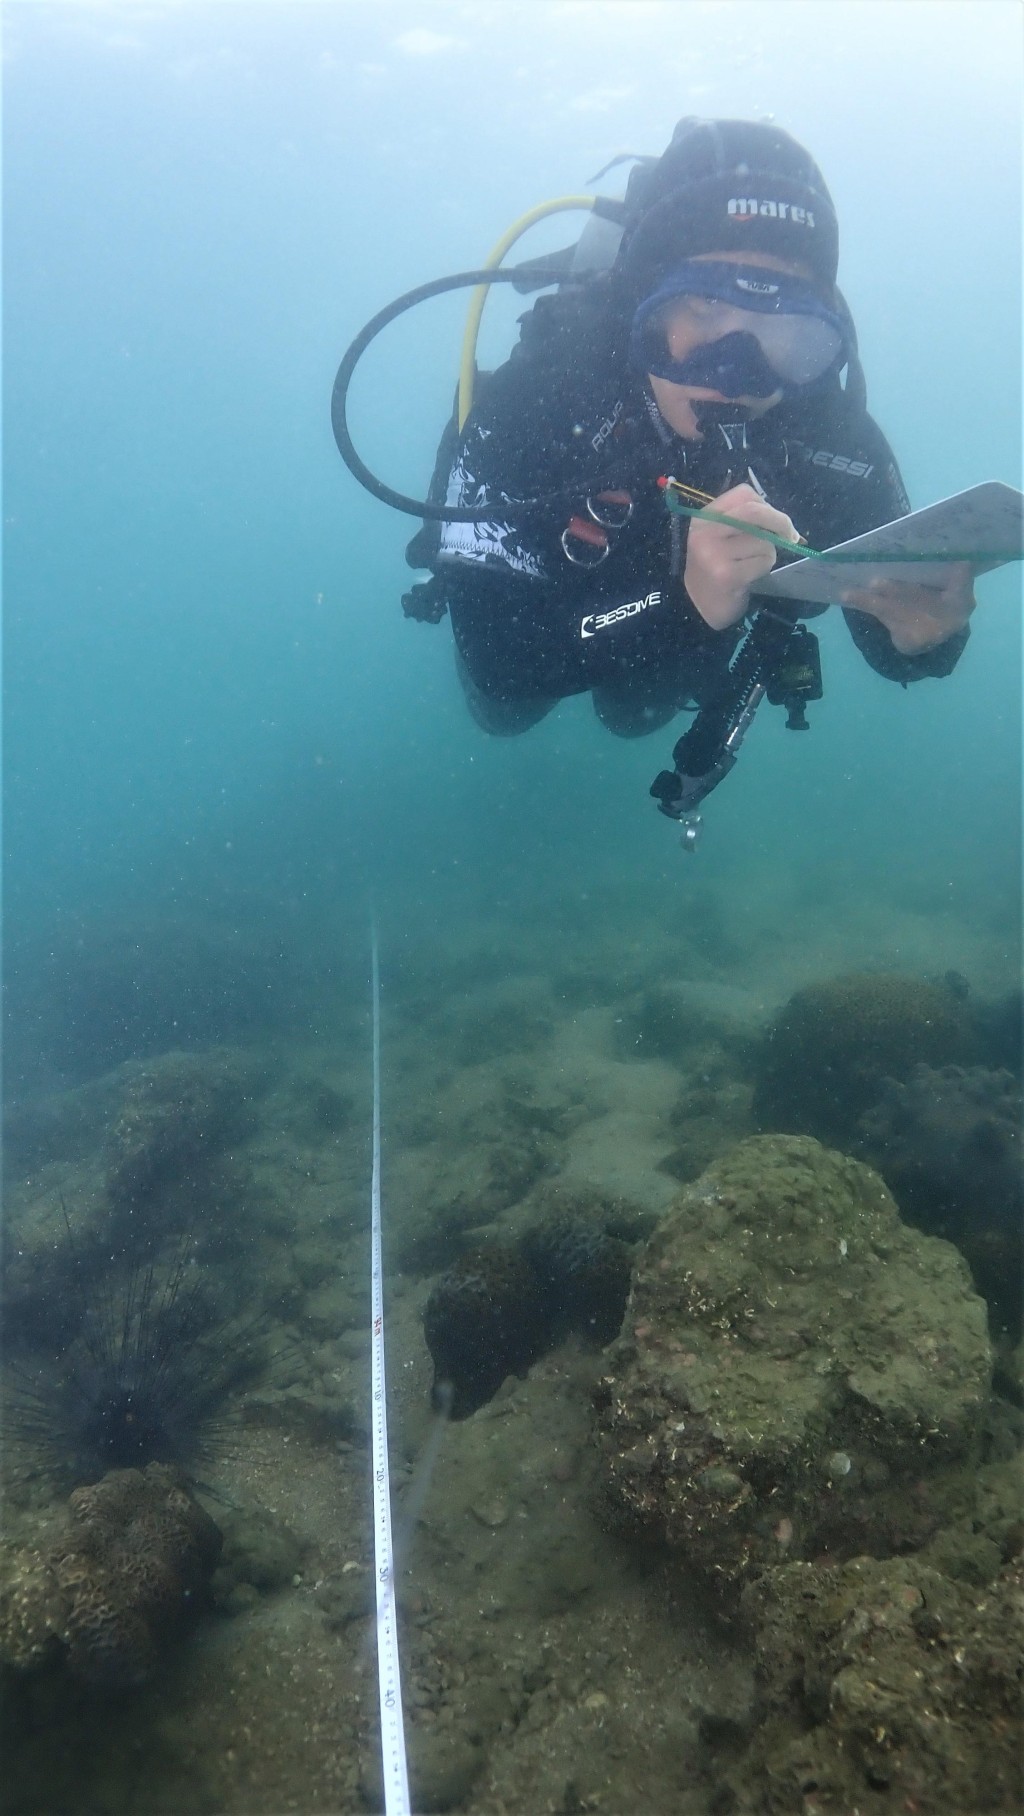 珊瑚礁普查员进行珊瑚调查。政府新闻处